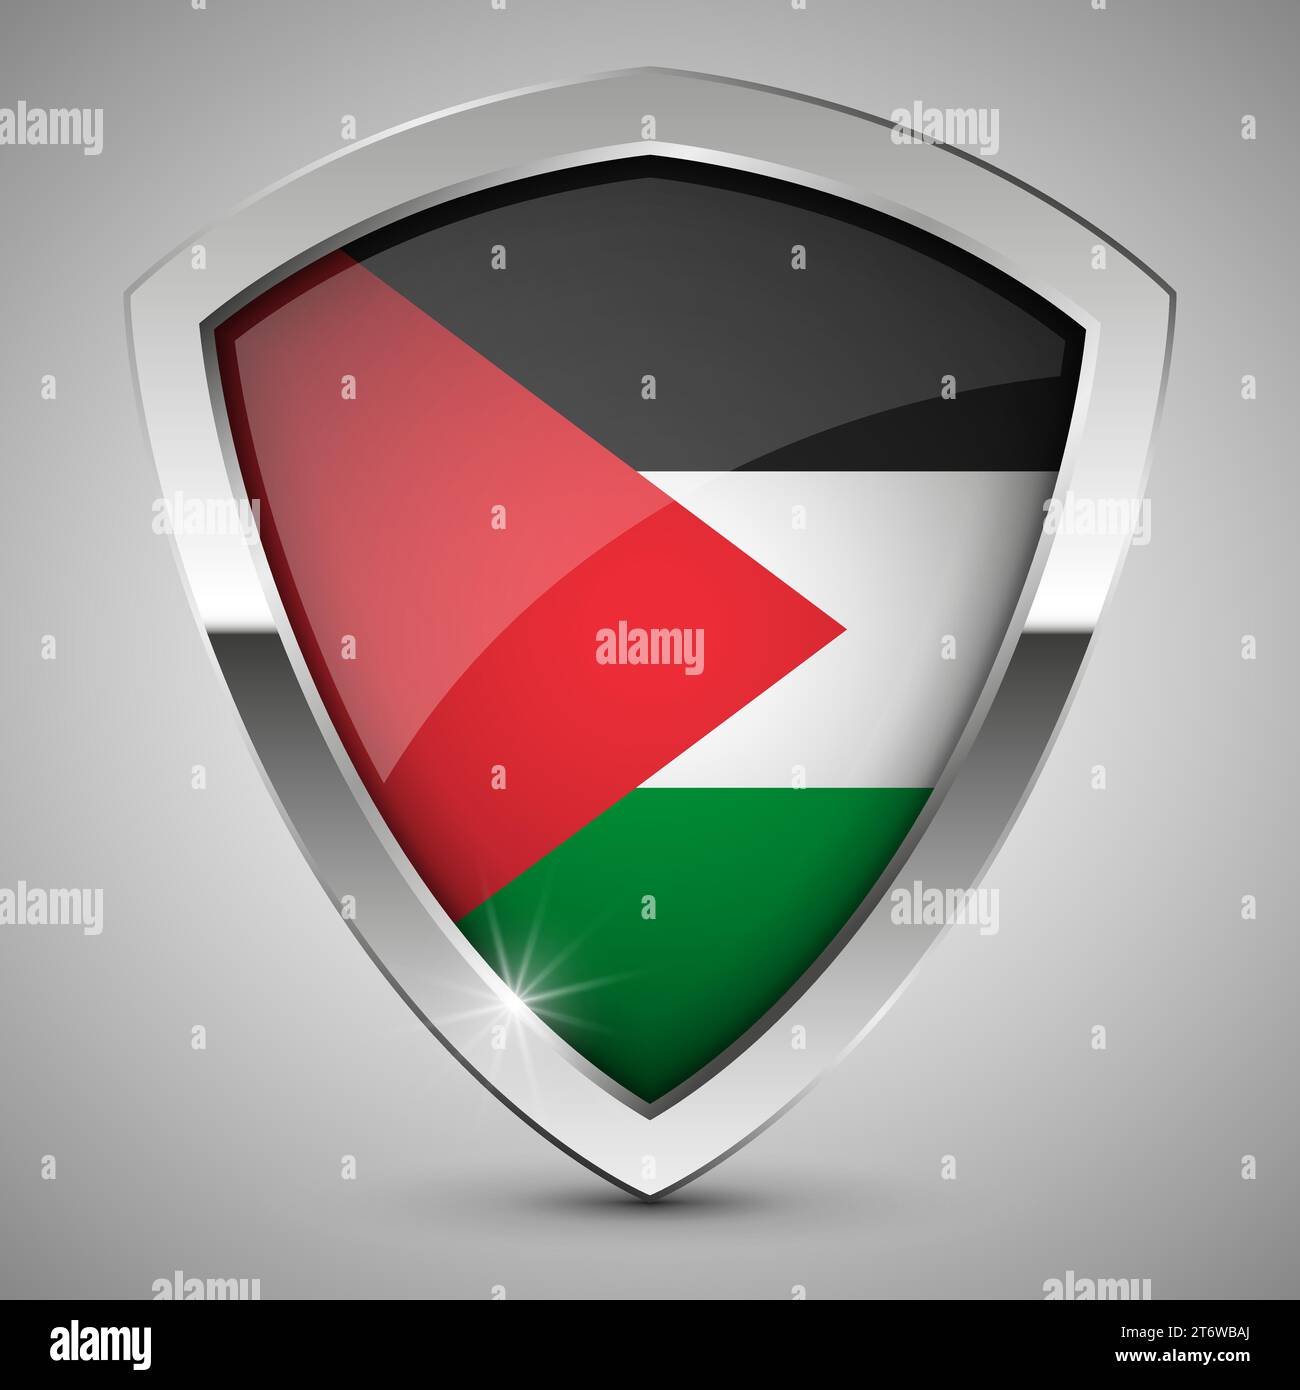 Patriotisches Schild mit palästinensischen Flaggenfarben. Perfektes Element für jeden Einsatz. Stock Vektor